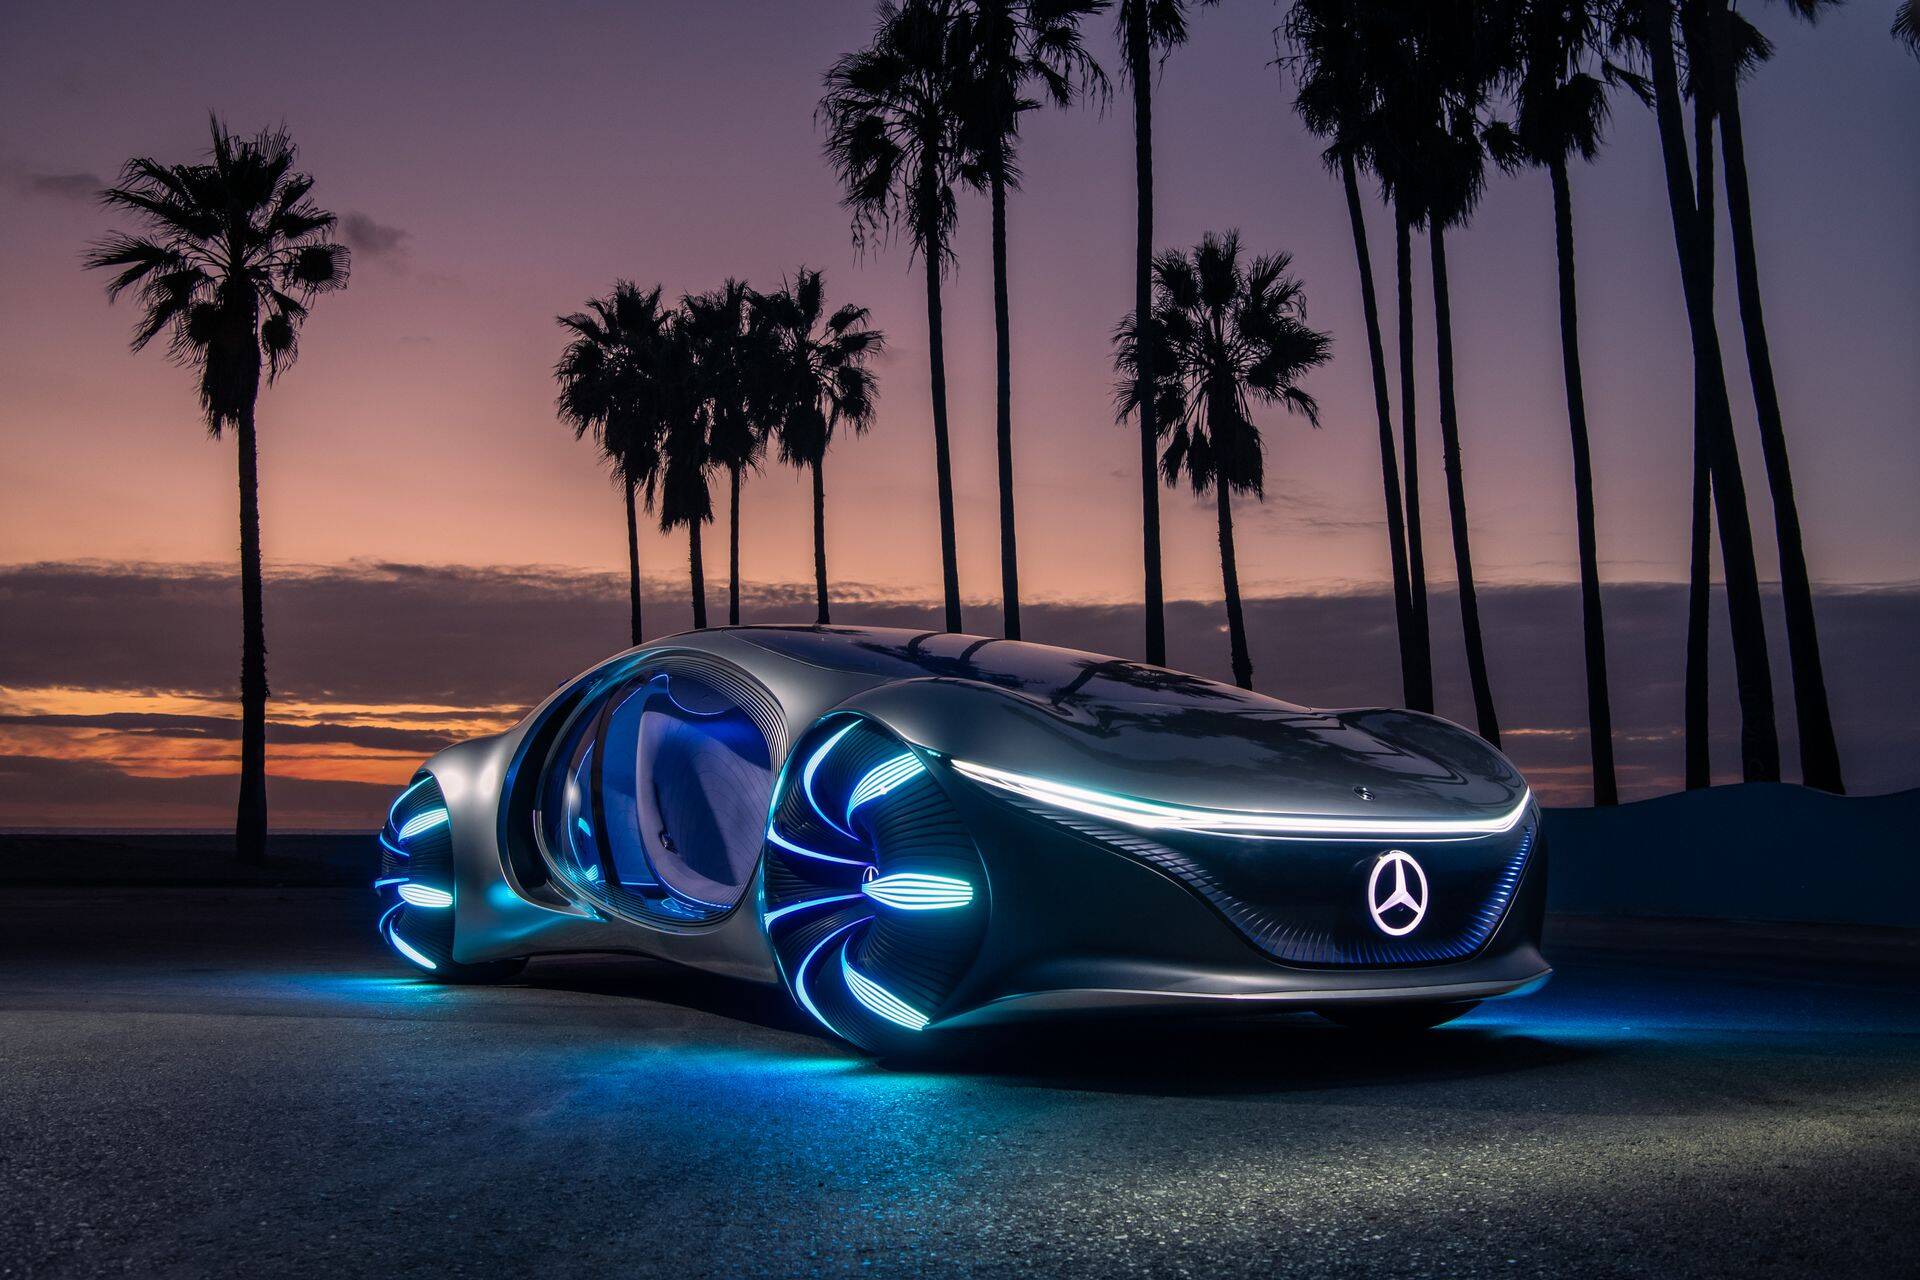 Mercedes-Benzi visioon tulevikuautost – elektriline VISION AVTR kontseptauto – sai inspiratsiooni filmist “Avatar”. Autohiid plaanib oma mudelipargi täiselektriliseks muuta aastaks 2030.